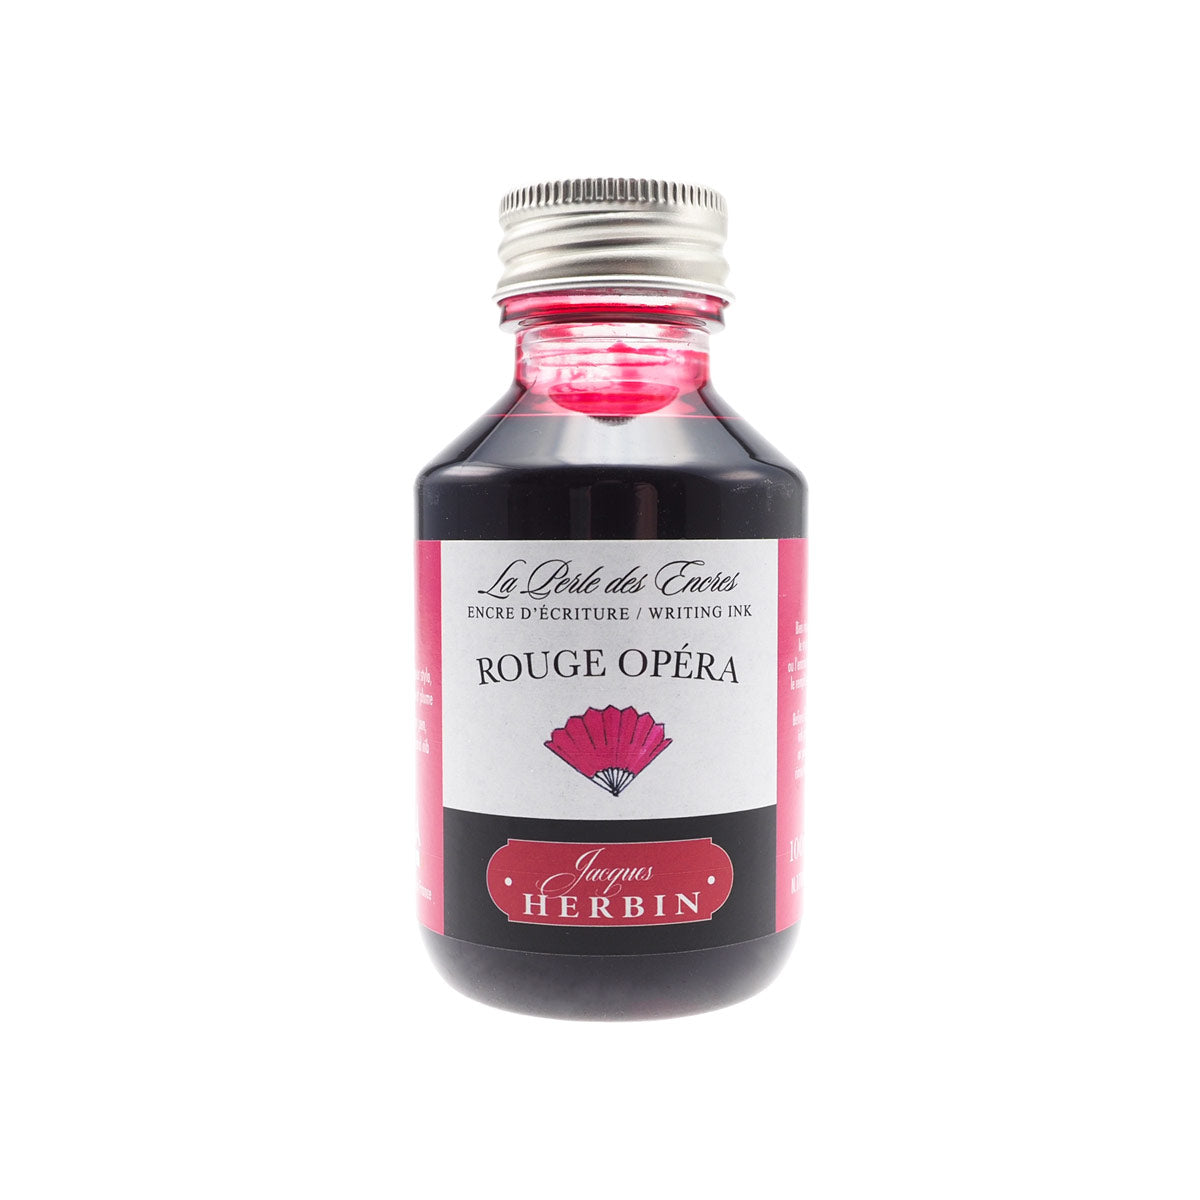 Herbin - Rouge opera (tiefrot), 100 ml